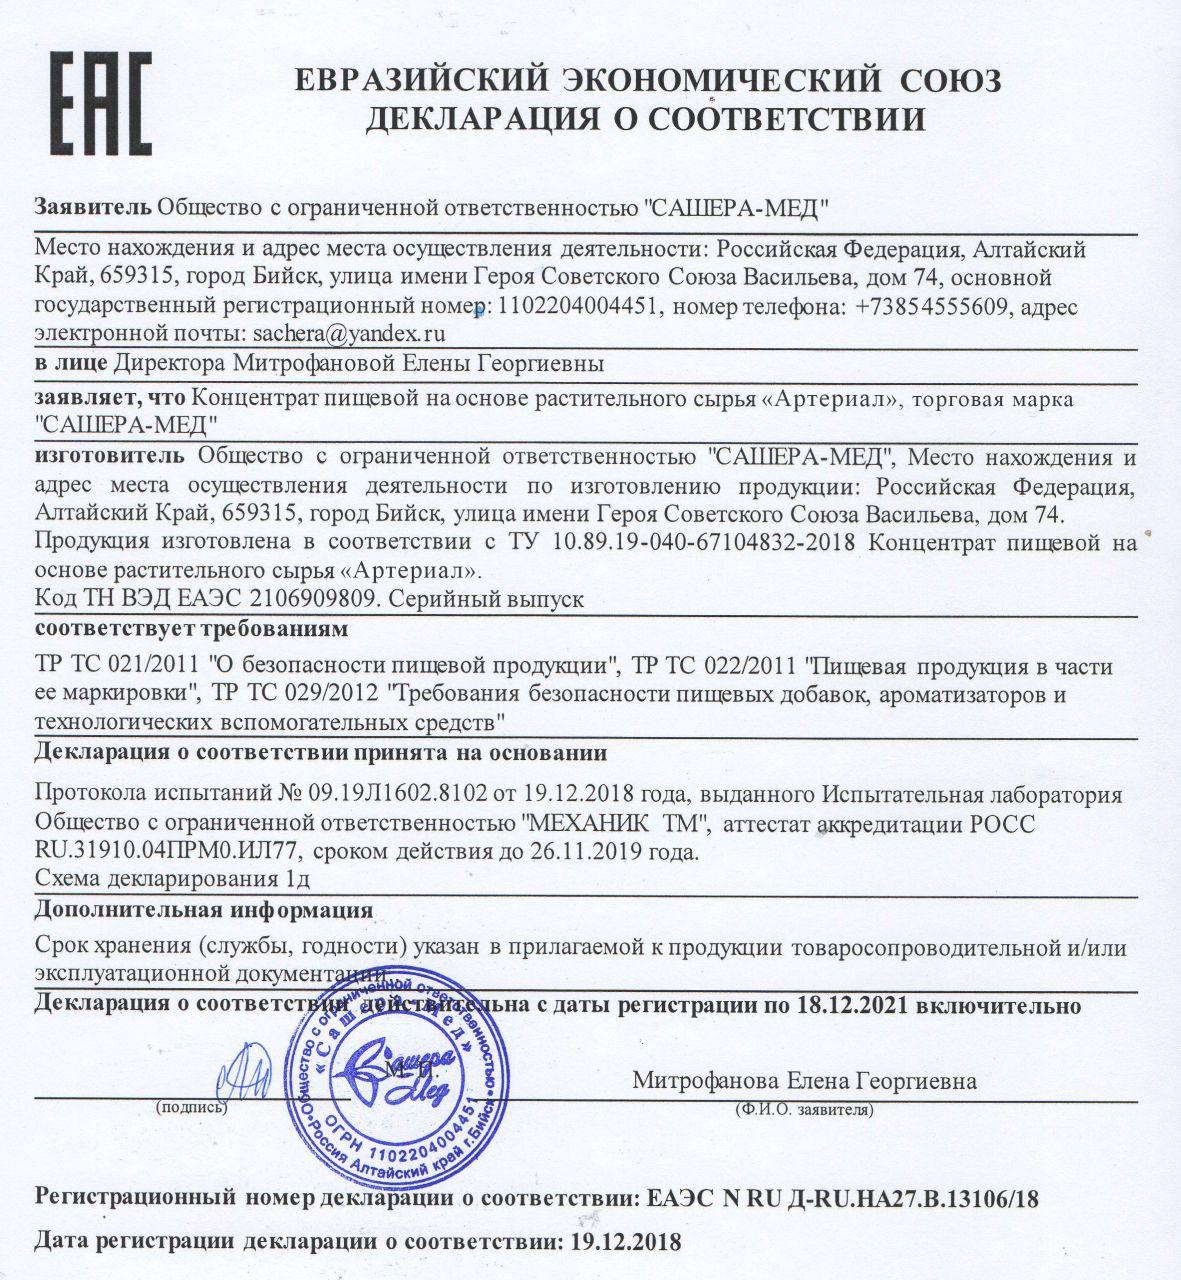 Сертификат на артериал в Санкт-Петербурге